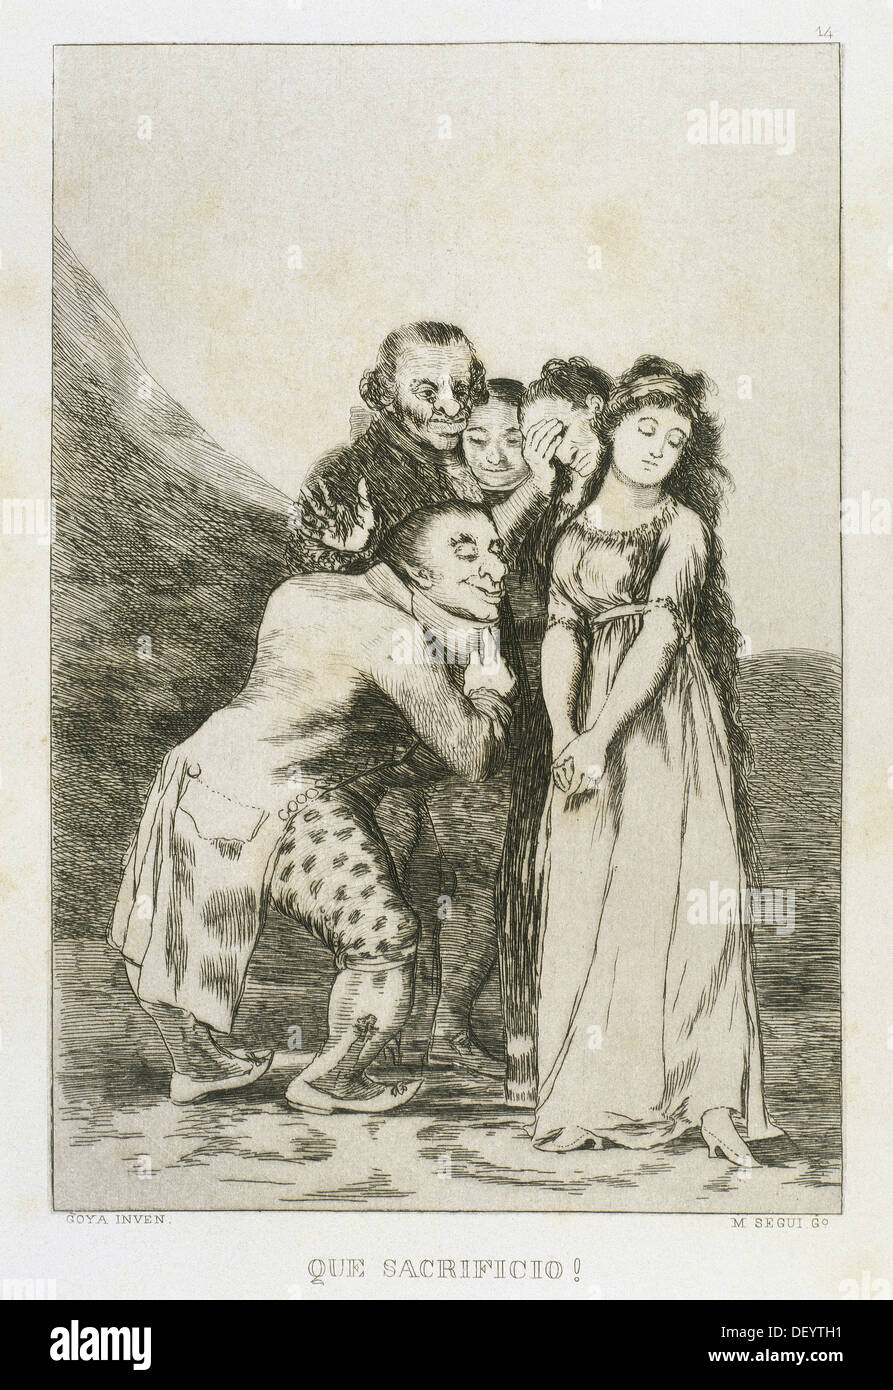 Francisco de Goya (1746-1828). Pintor y grabador español. Los Caprichos. Que Sacrificio... (Qué sacrificio...). Número 14. Foto de stock